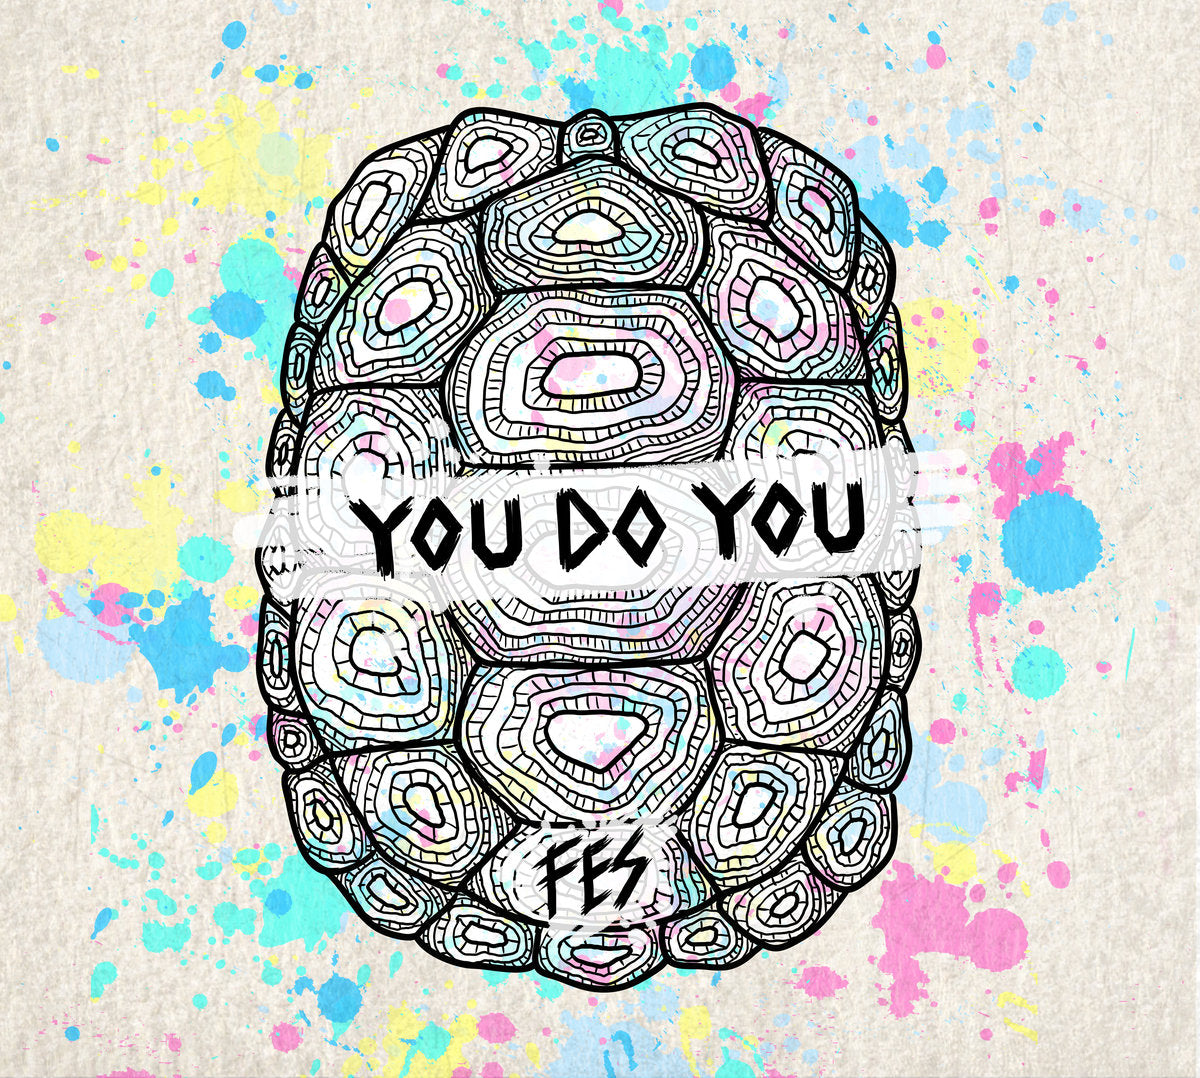 FES - You Do You Tape